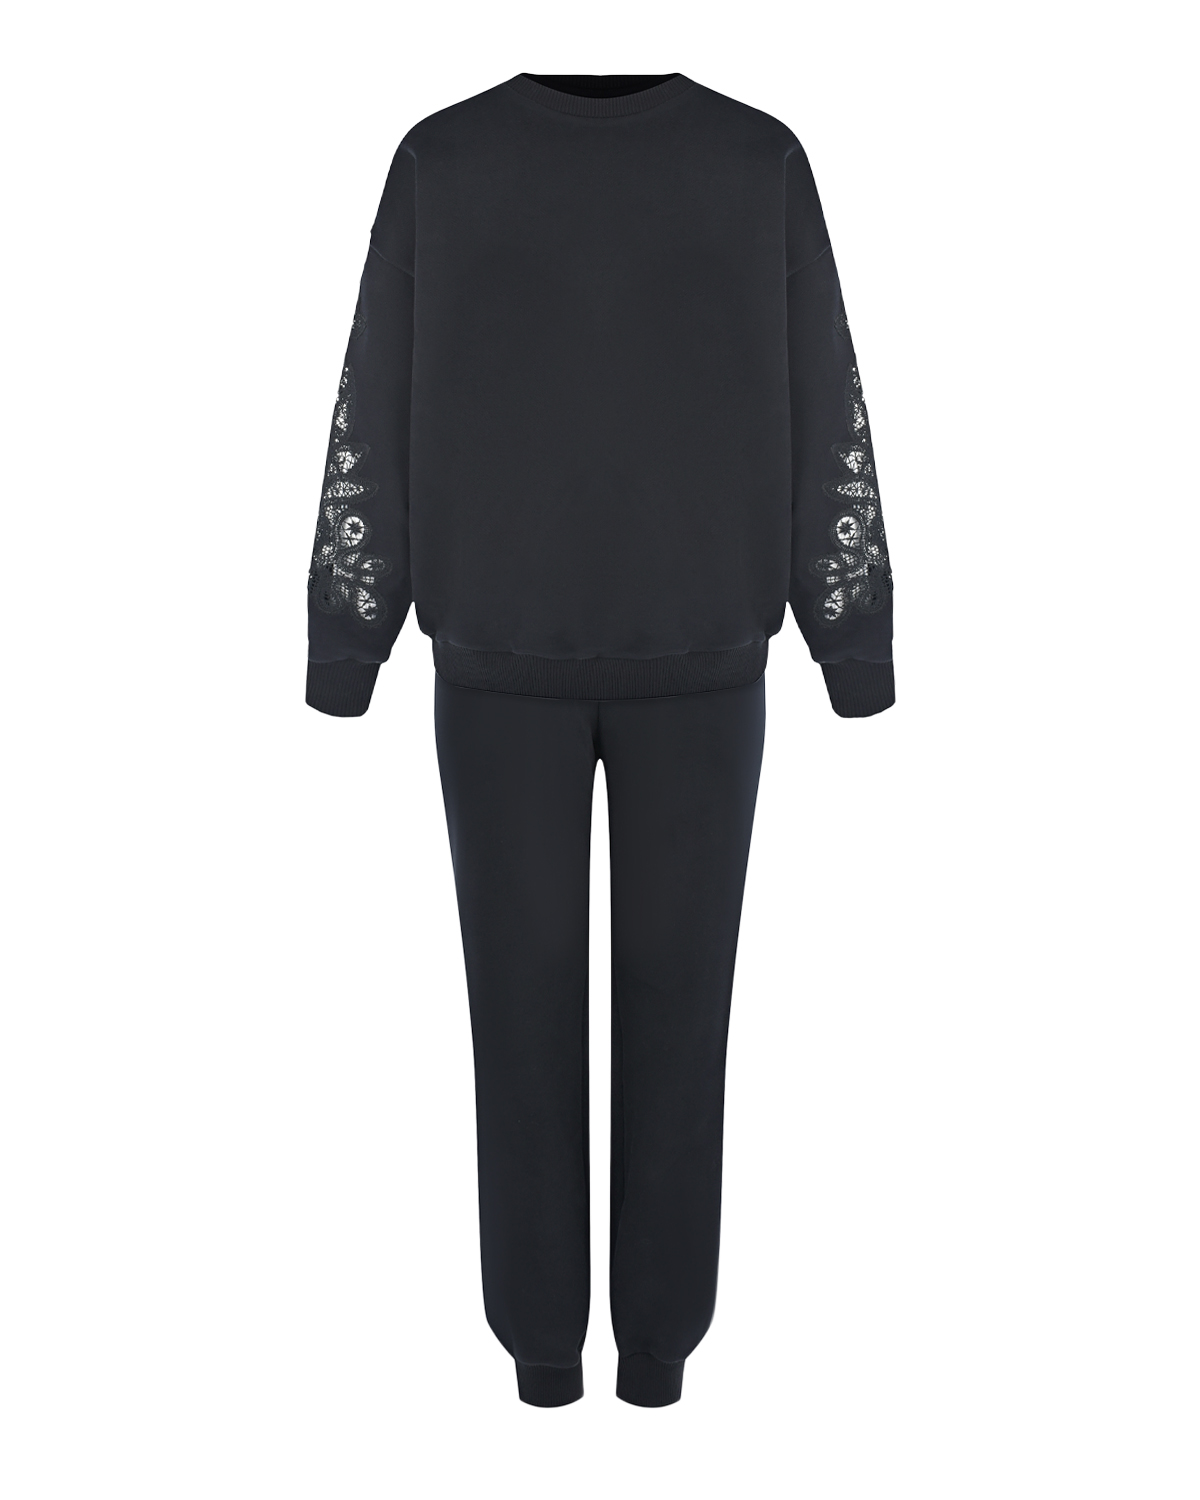 Черный костюм с кружевной отделкой Alena Akhmadullina, размер 38, цвет нет цвета - фото 1